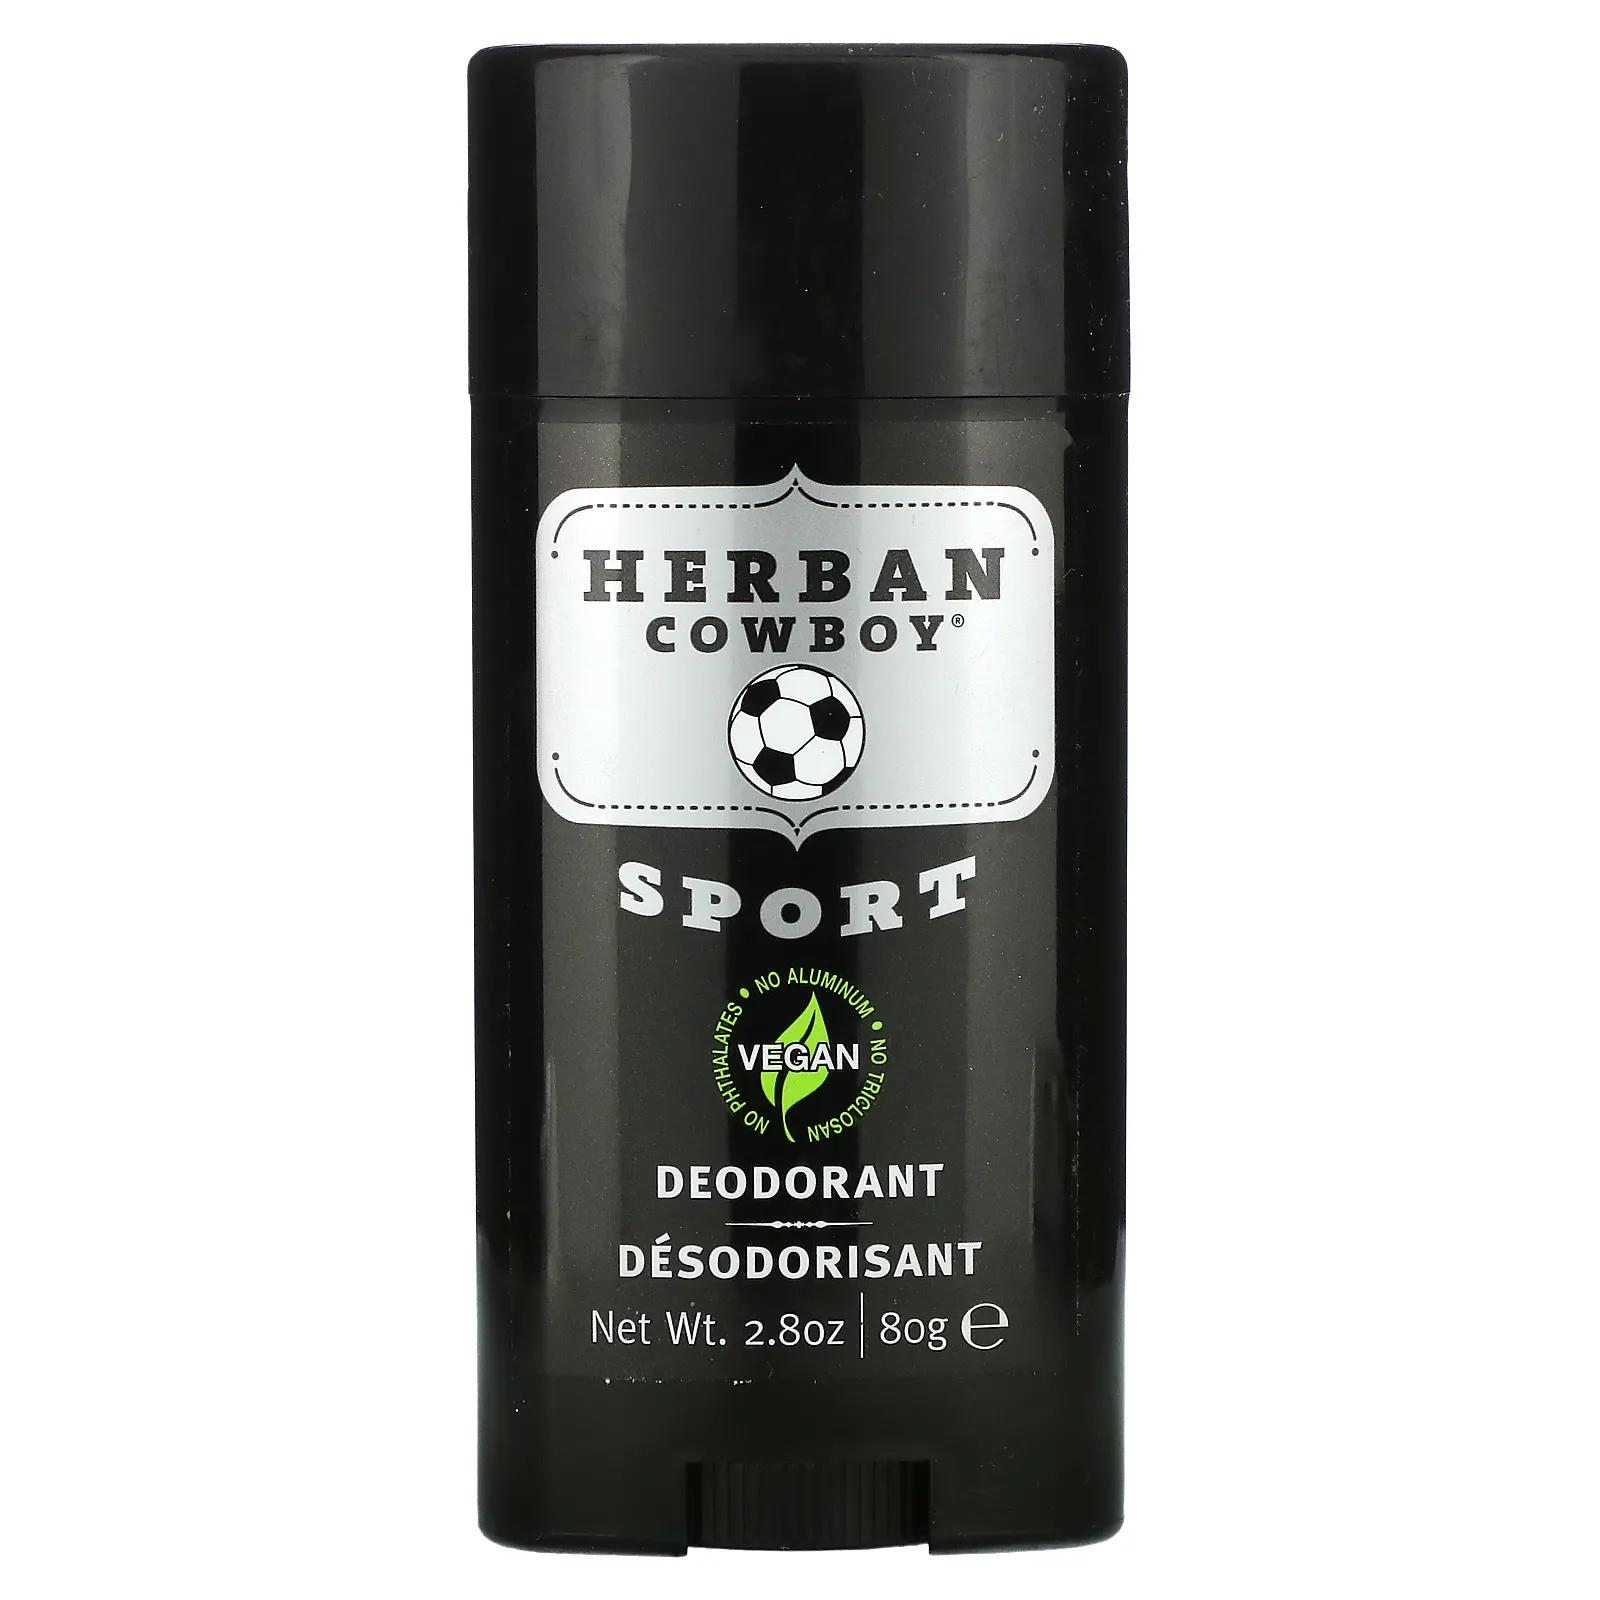 Herban Cowboy Sport дезодорант с максимальной защитой 2,8 унции (80 г) цена и фото